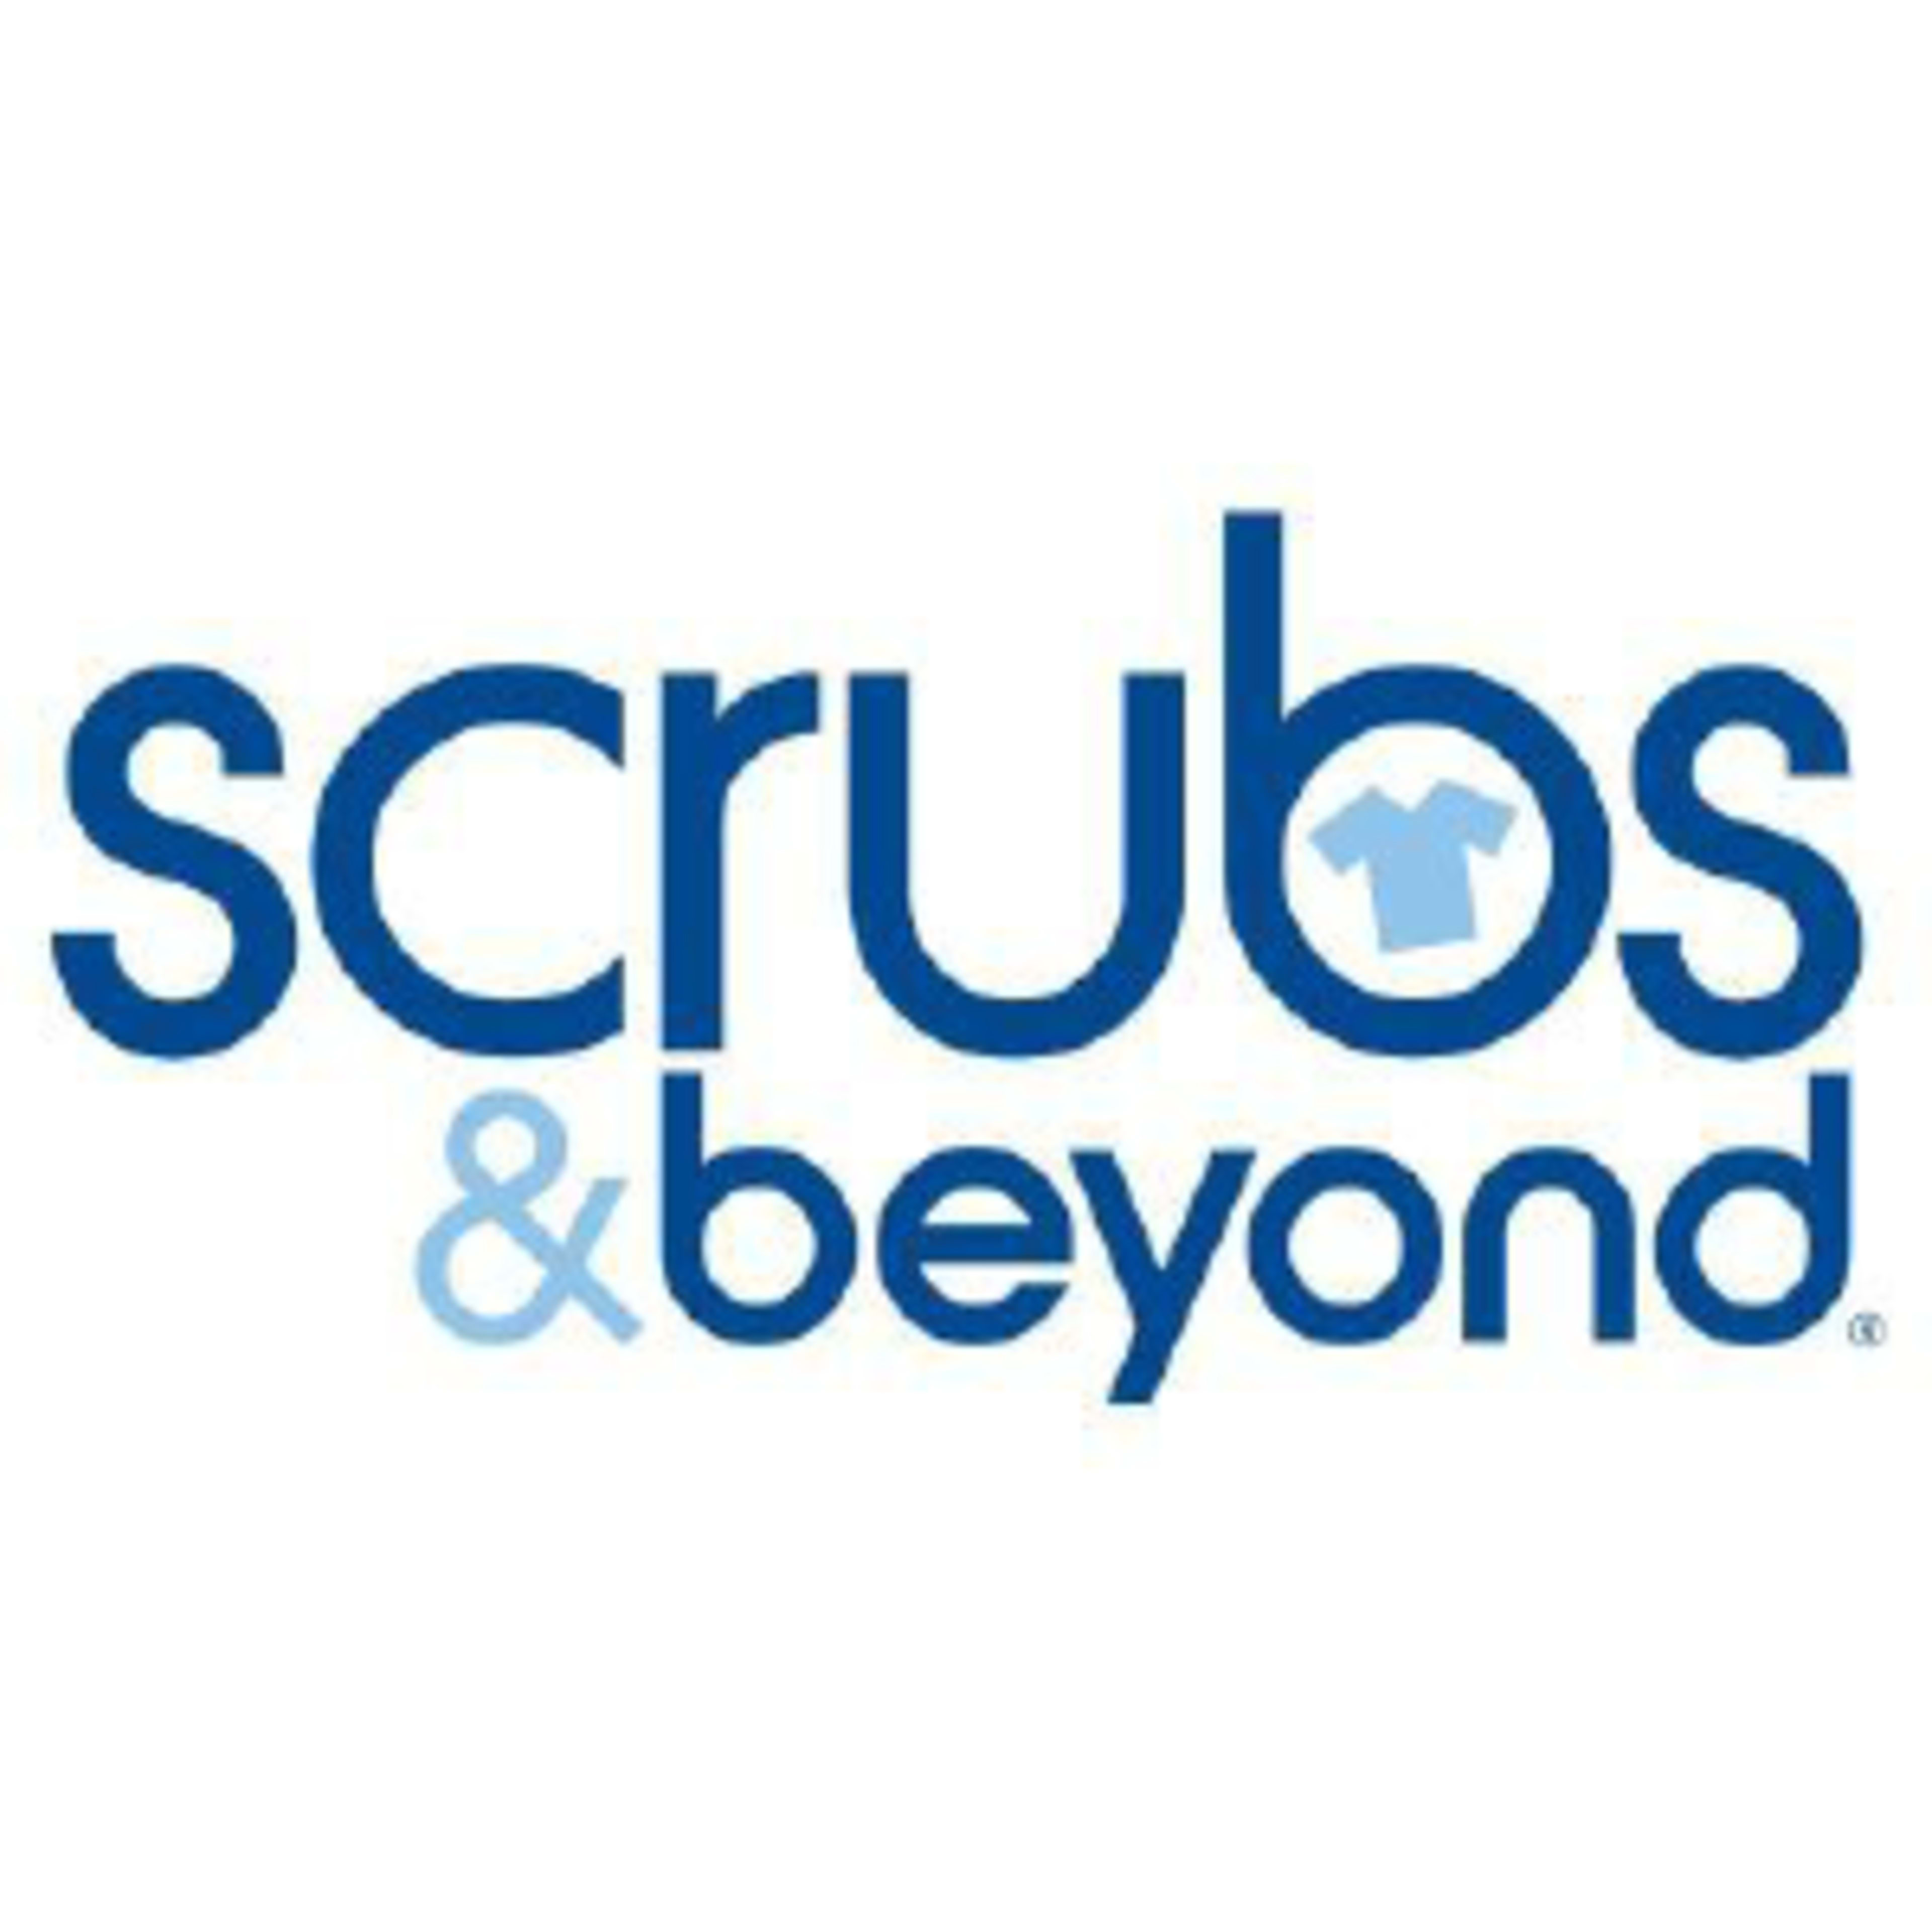 Scrubs & BeyondCode